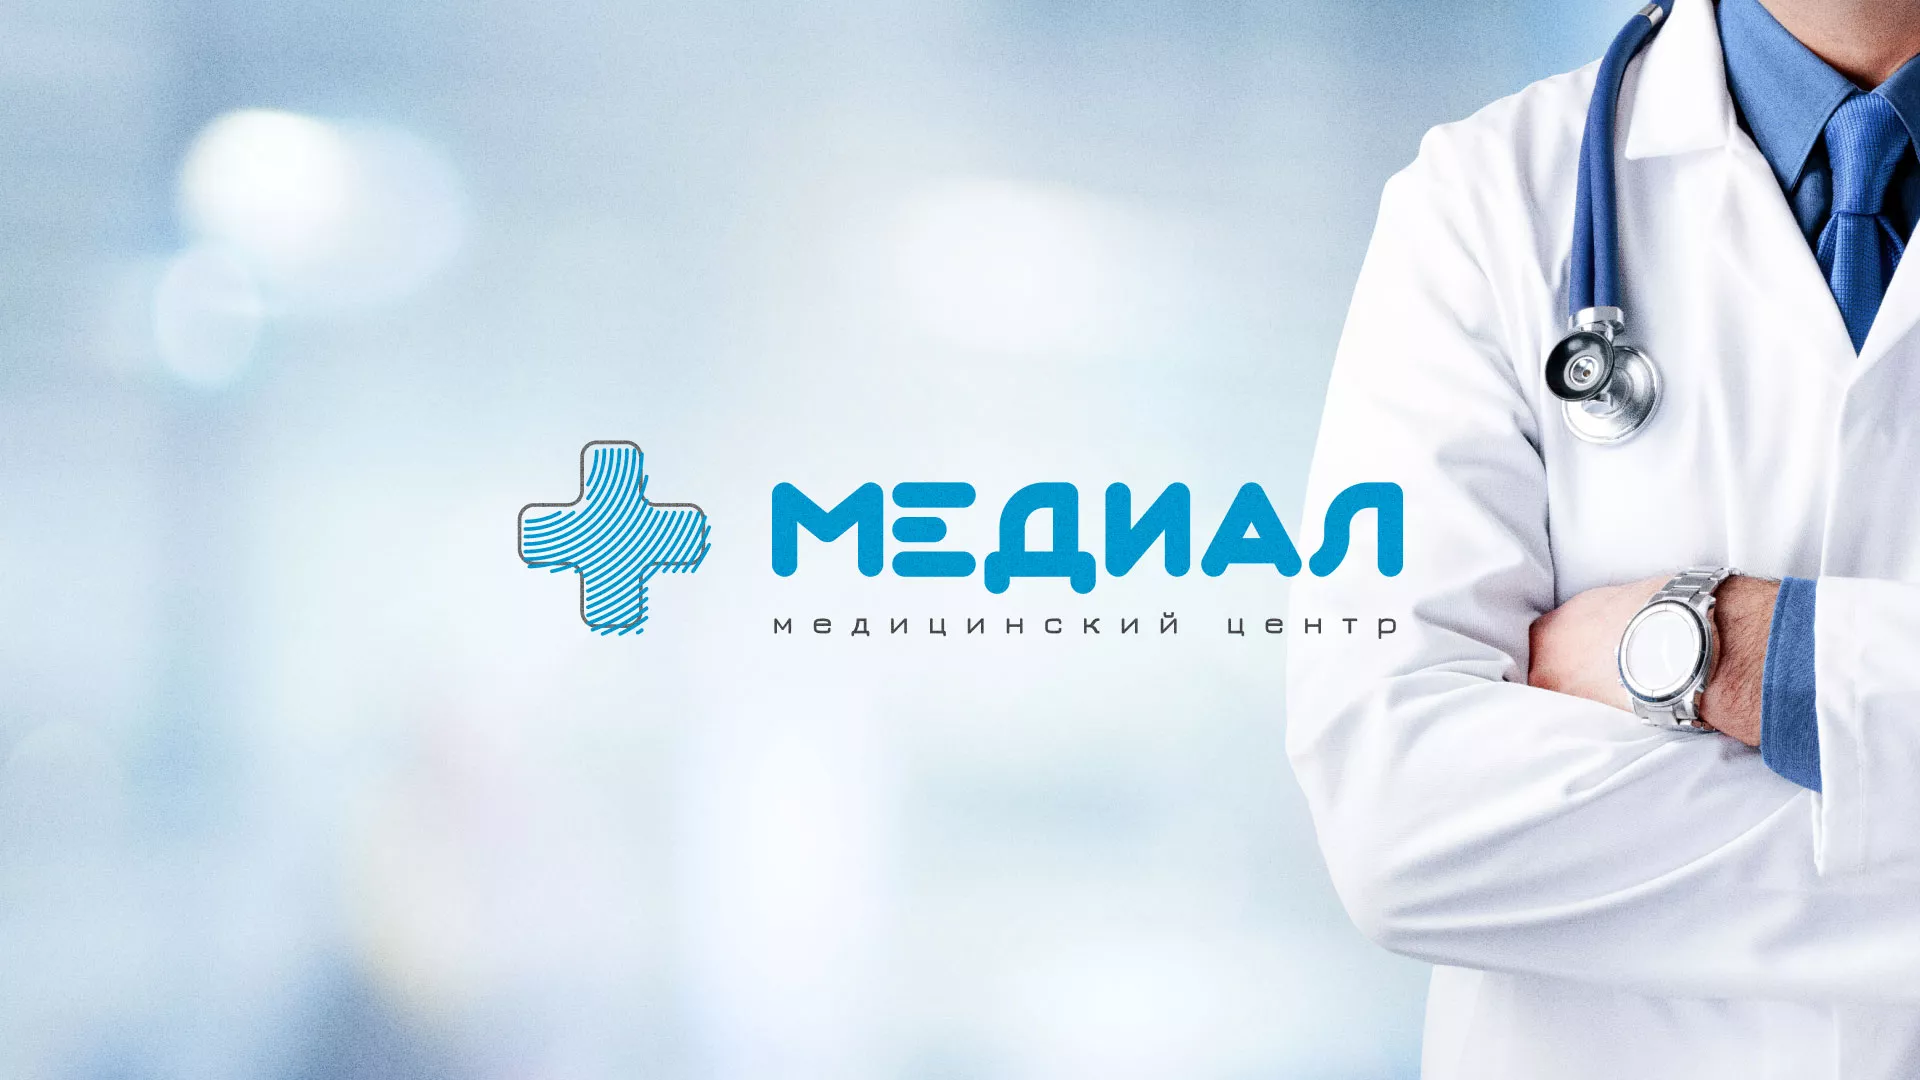 Создание сайта для медицинского центра «Медиал» в Могоче